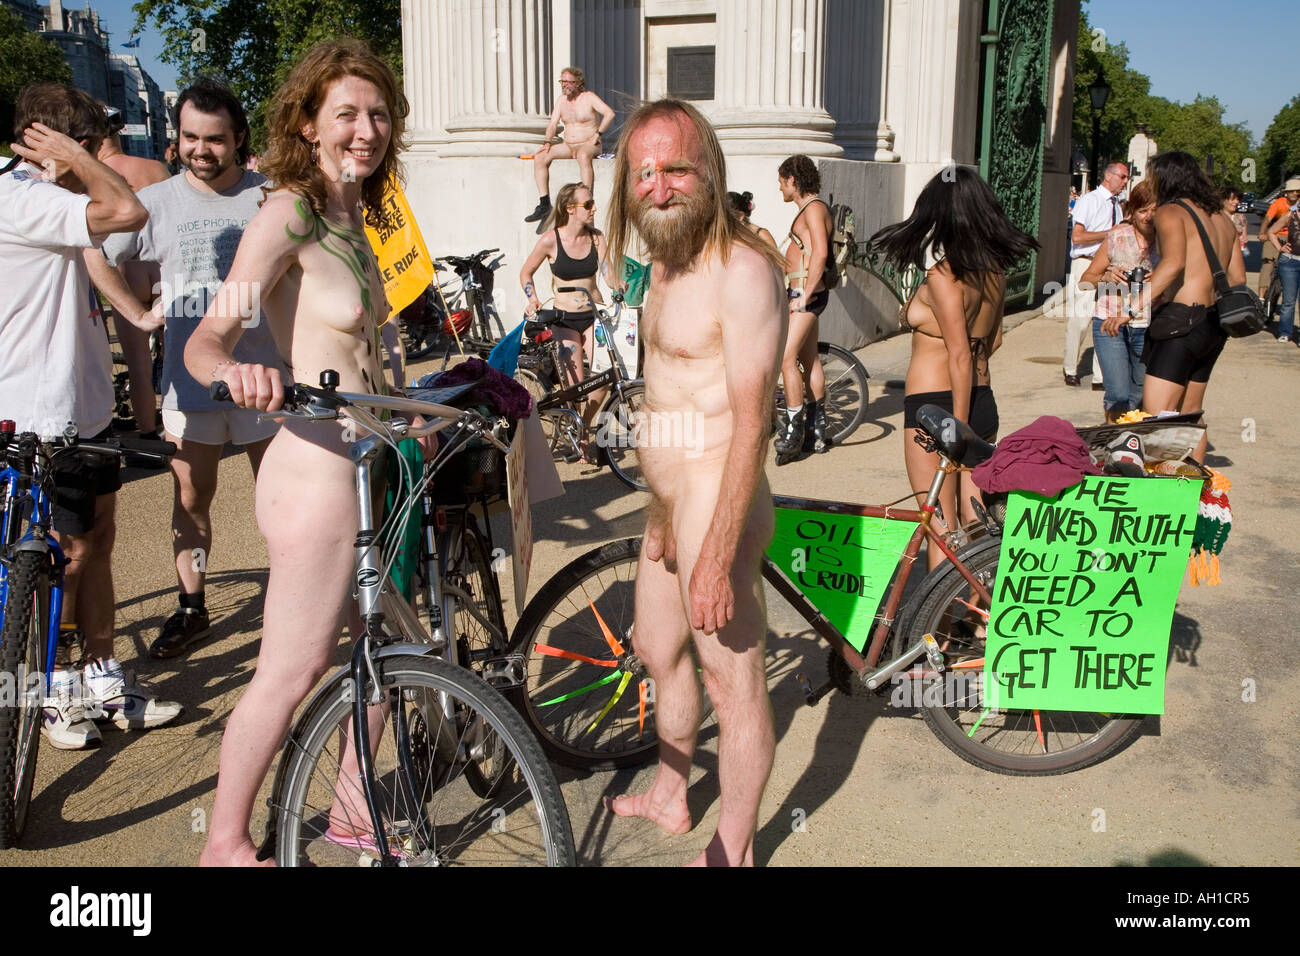 Naked girl bike